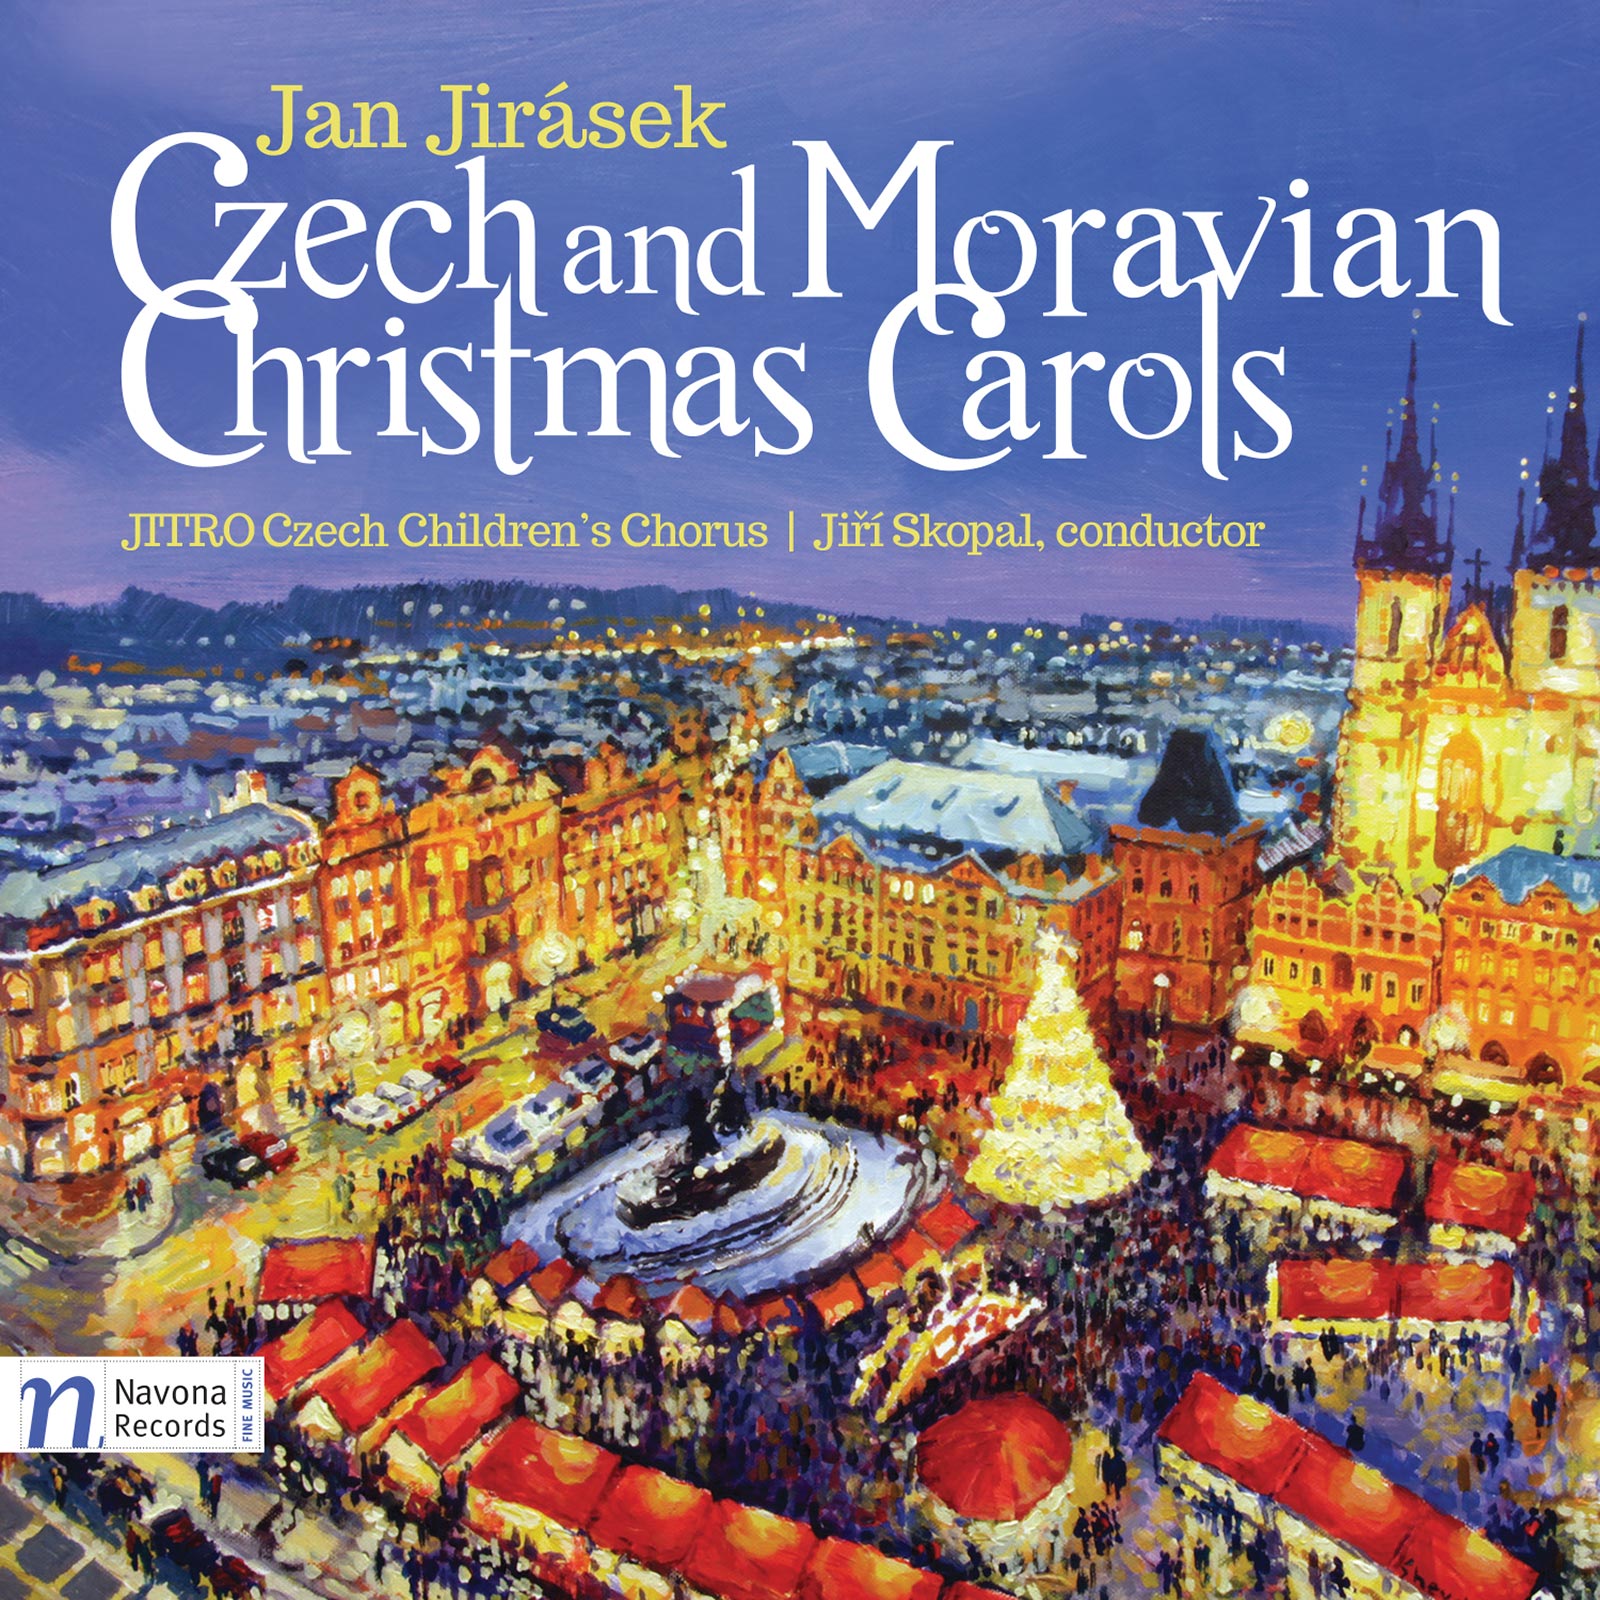 CZECH AND MORAVIAN CHRISTMAS CAROLS - ALbum Cover